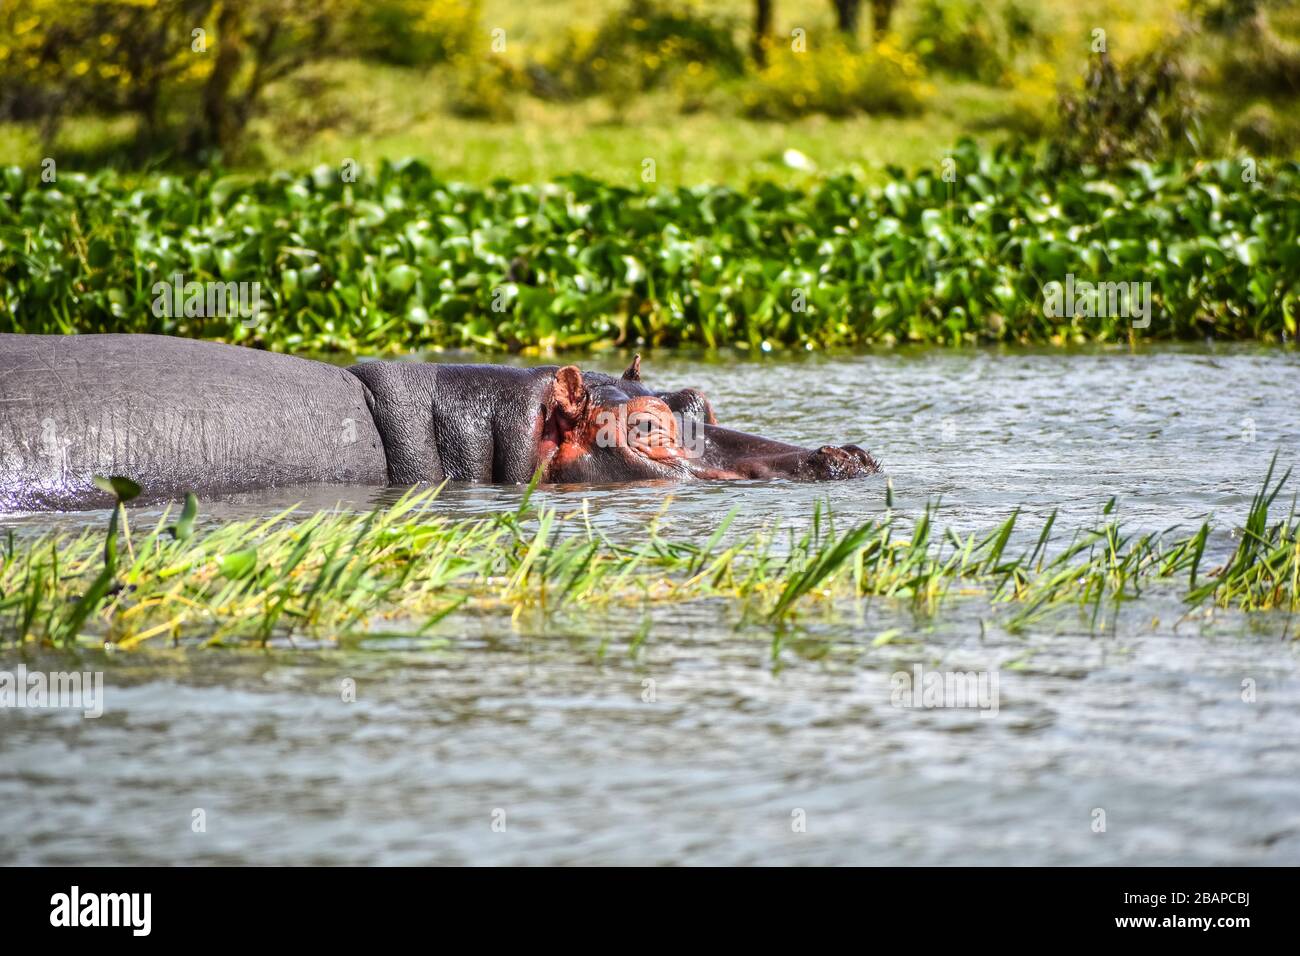 Un hipopótamo que va a nadar. Foto de stock